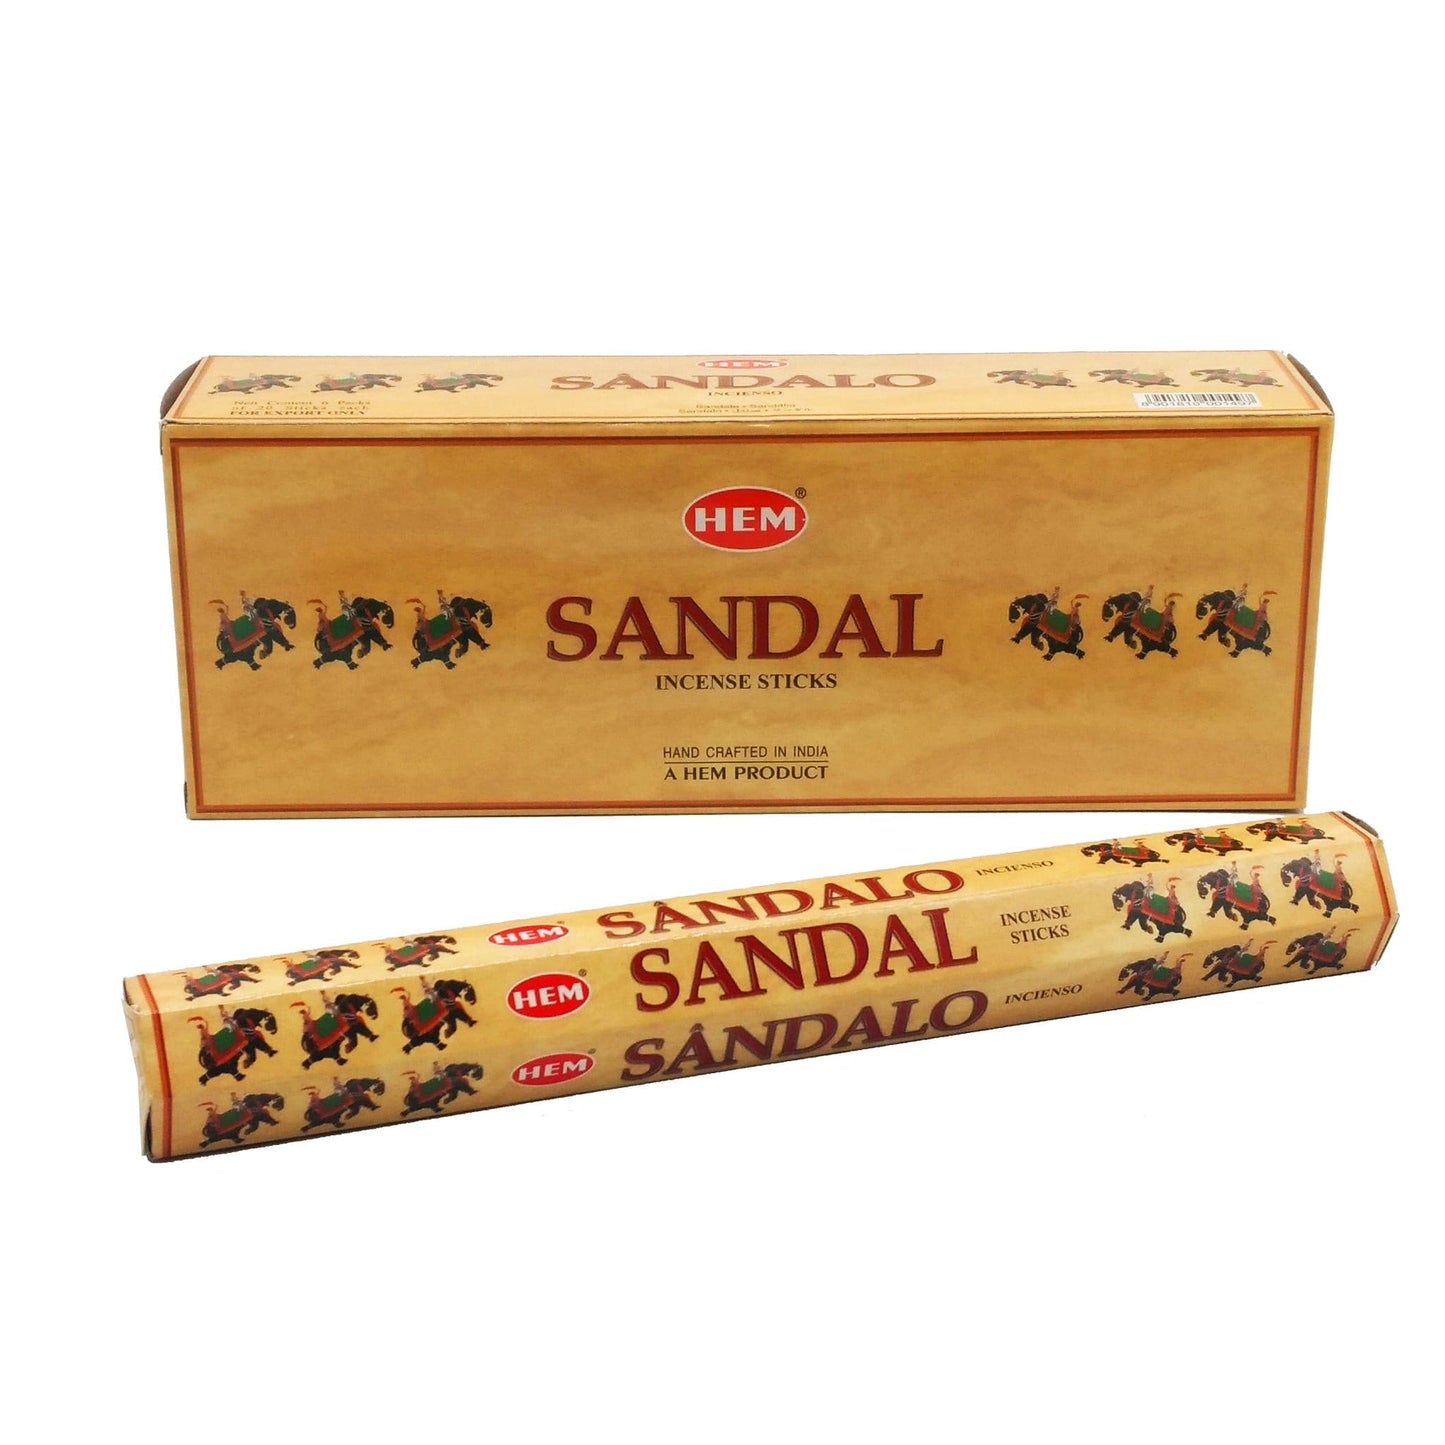 Hem Sandal Incense Sticks.